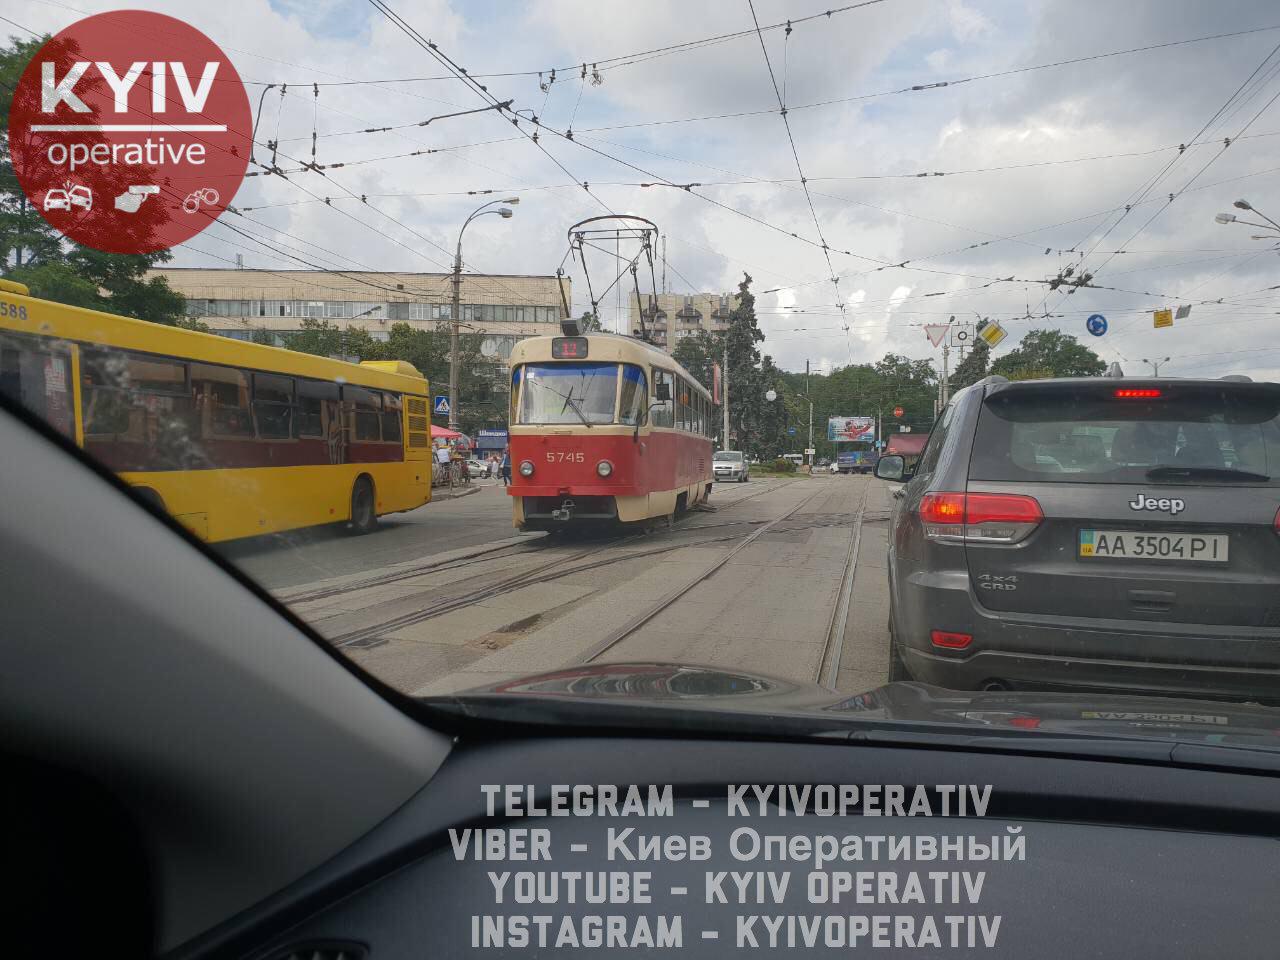 трамвай, транспортная инфраструктура в Киеве, стоимость проезда в коммунальном транспорте Киева, качество проезда в столичном транспорте, коммунальный транспорт Киева